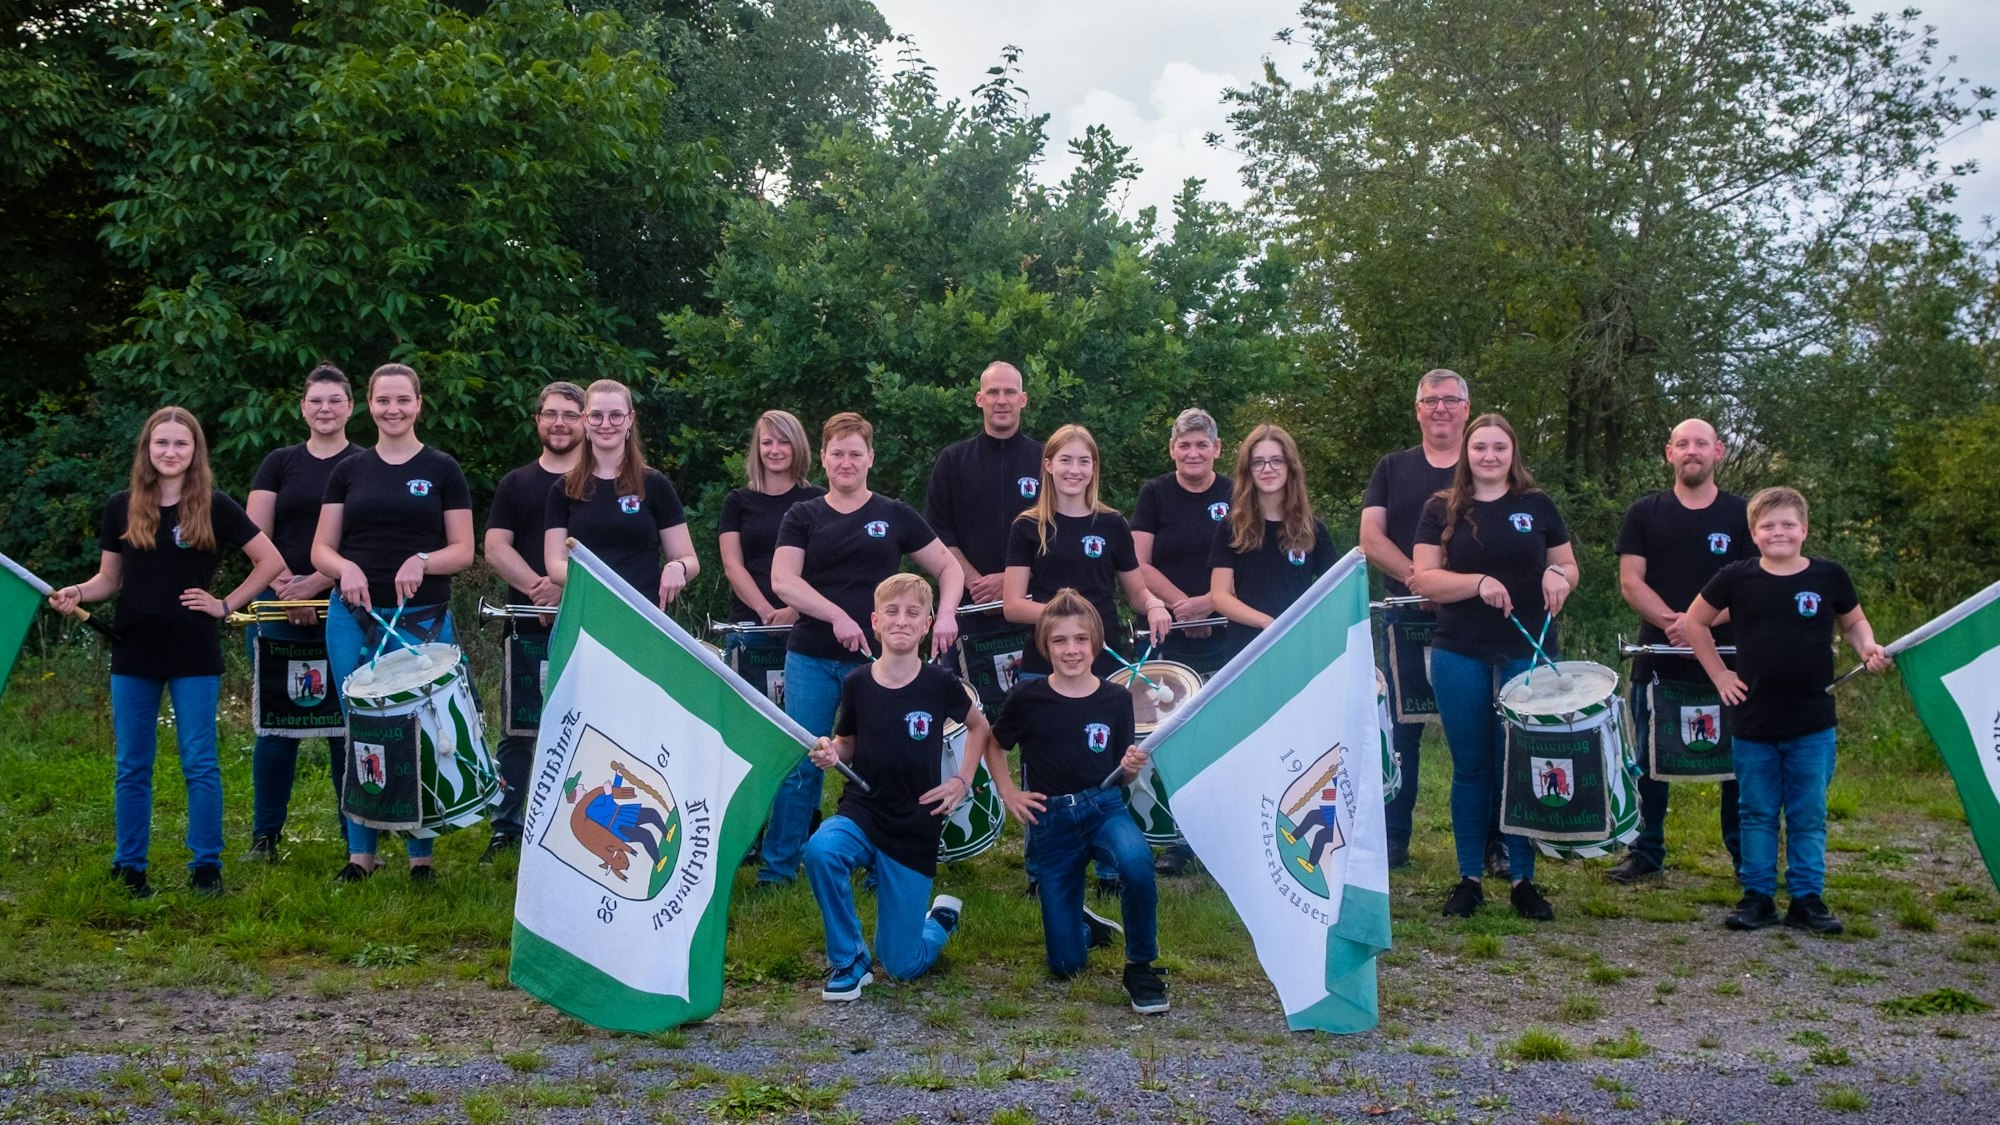 Vor 65 Jahren wurde in der Gummersbacher Ortschaft Lieberhausen der Fanfarenzug gegründet. Am kommenden Samstag wird dieser besondere Geburtstag ordentlich gefeiert. Hier posieren die Musikerinnen und Musiker mit ihren Fahnen im Grünen.